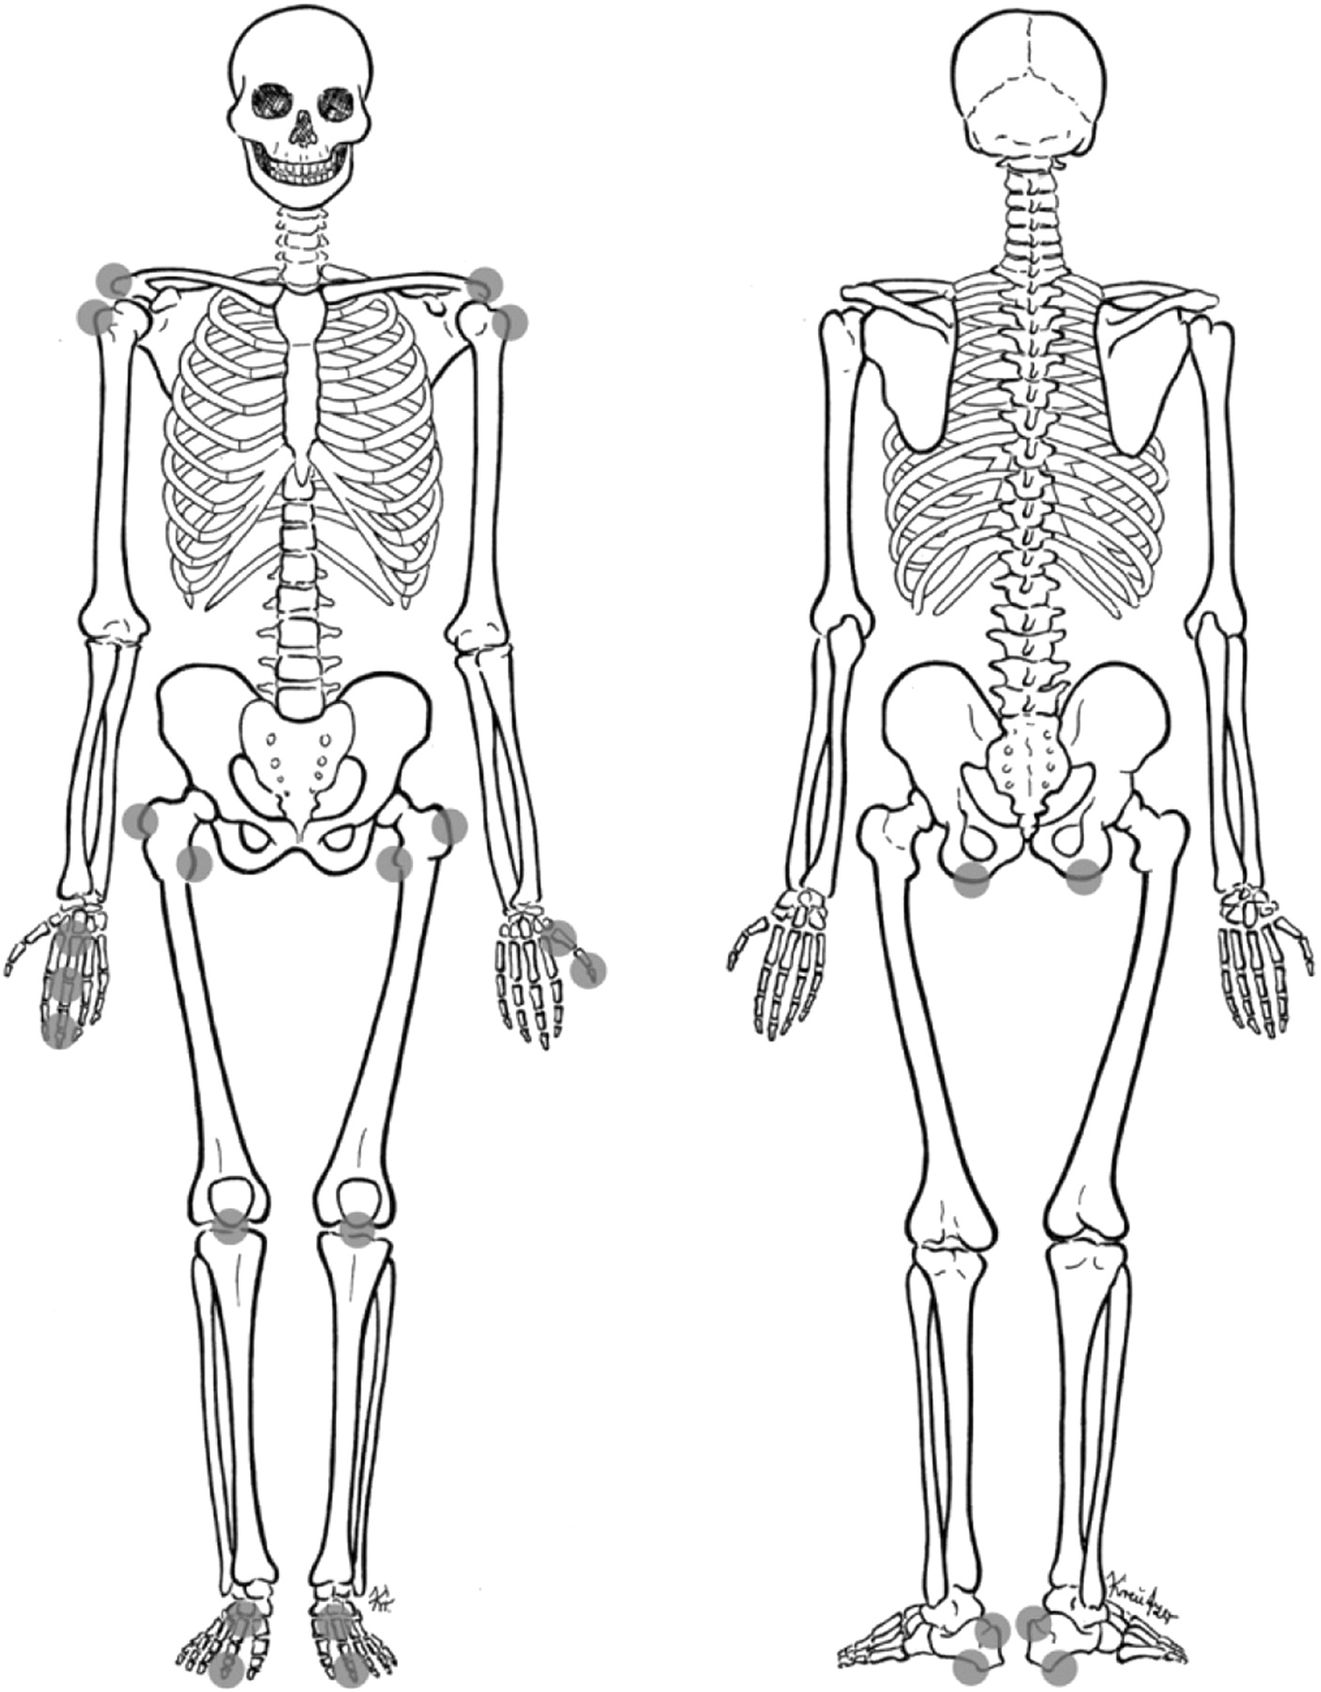 Скелет человека вид спереди и сзади без подписей